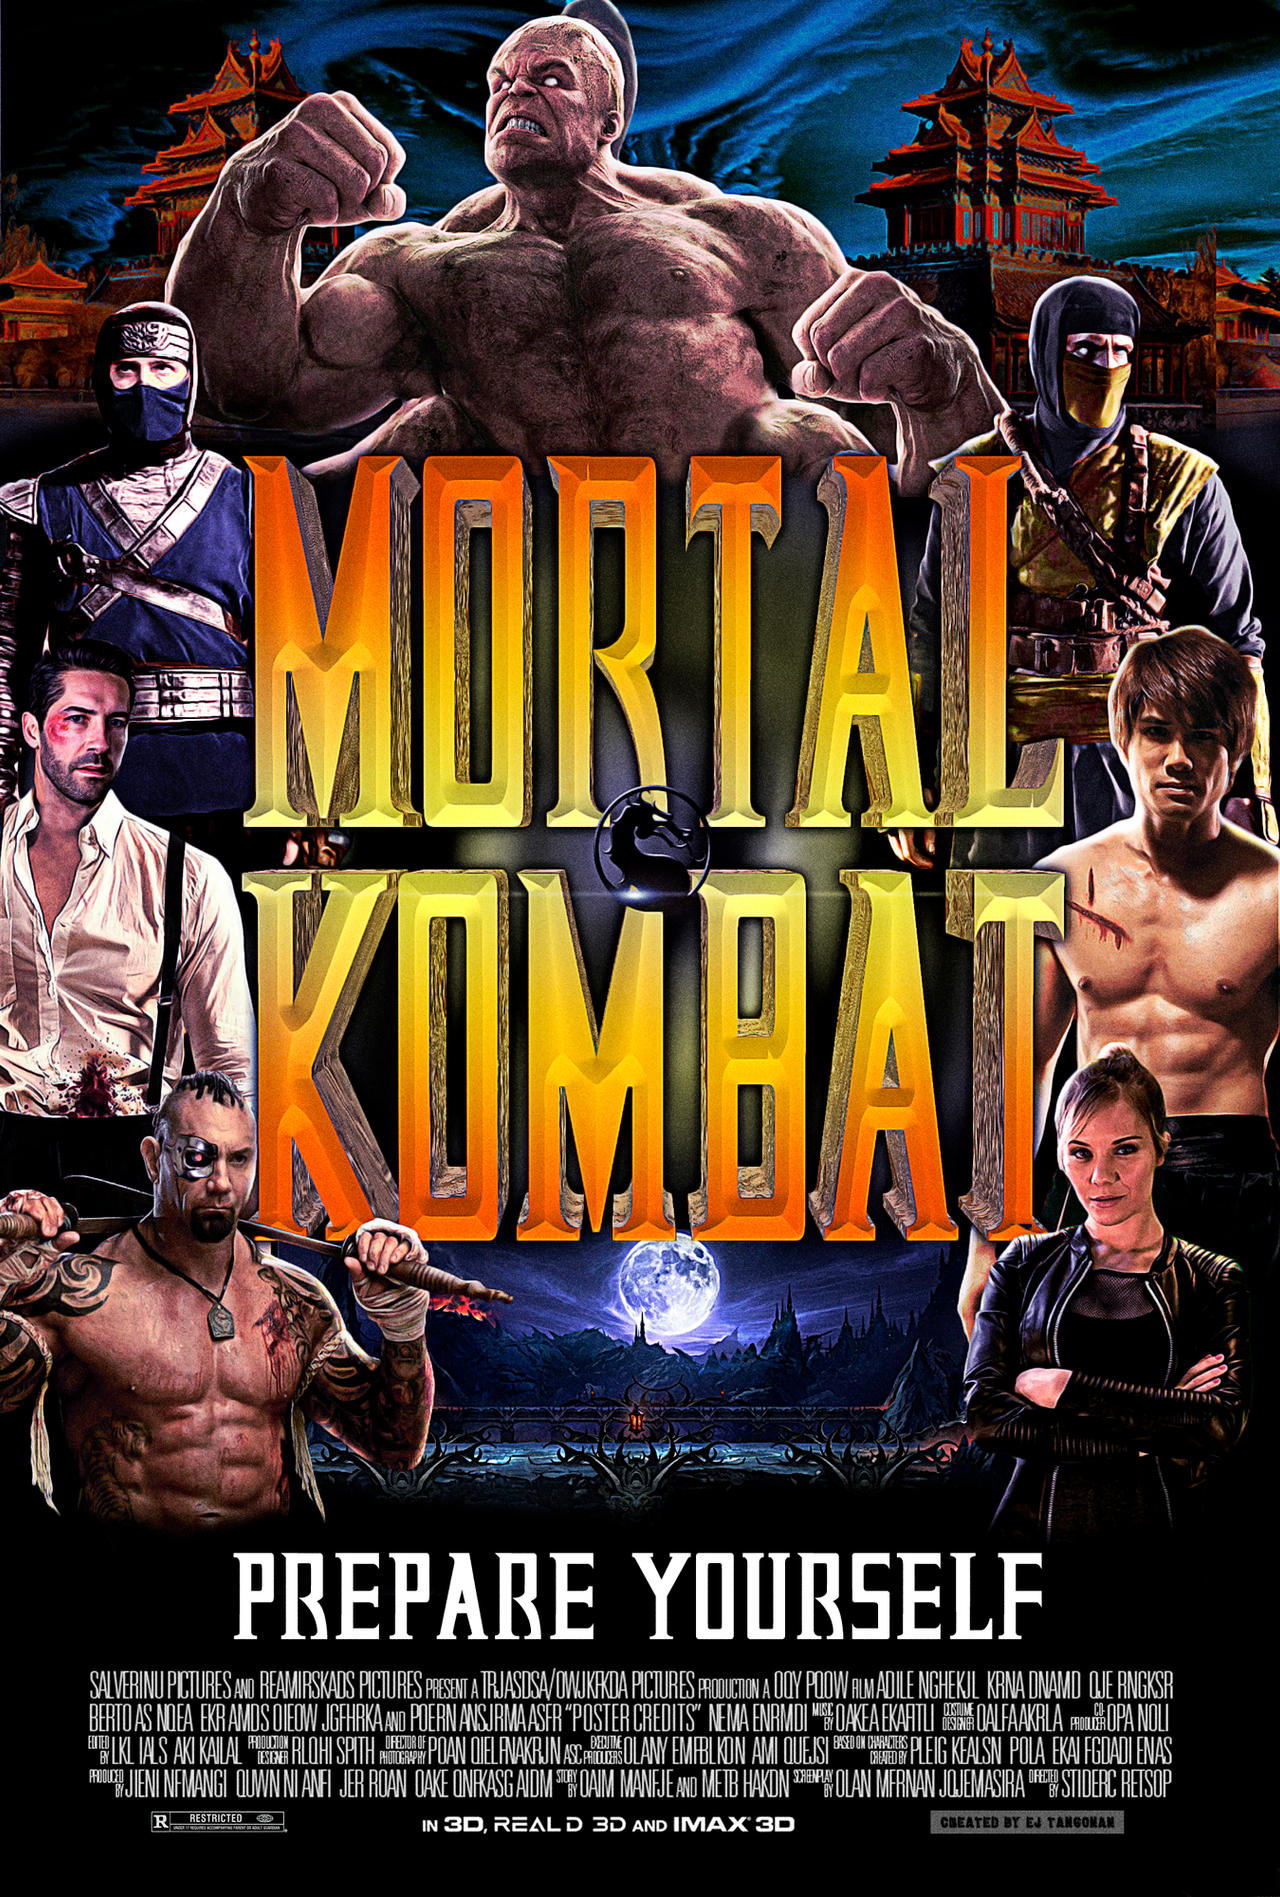 Mortal Kombat (1995). Cool poster artwork by E.J. Tangonan. : r/MortalKombat